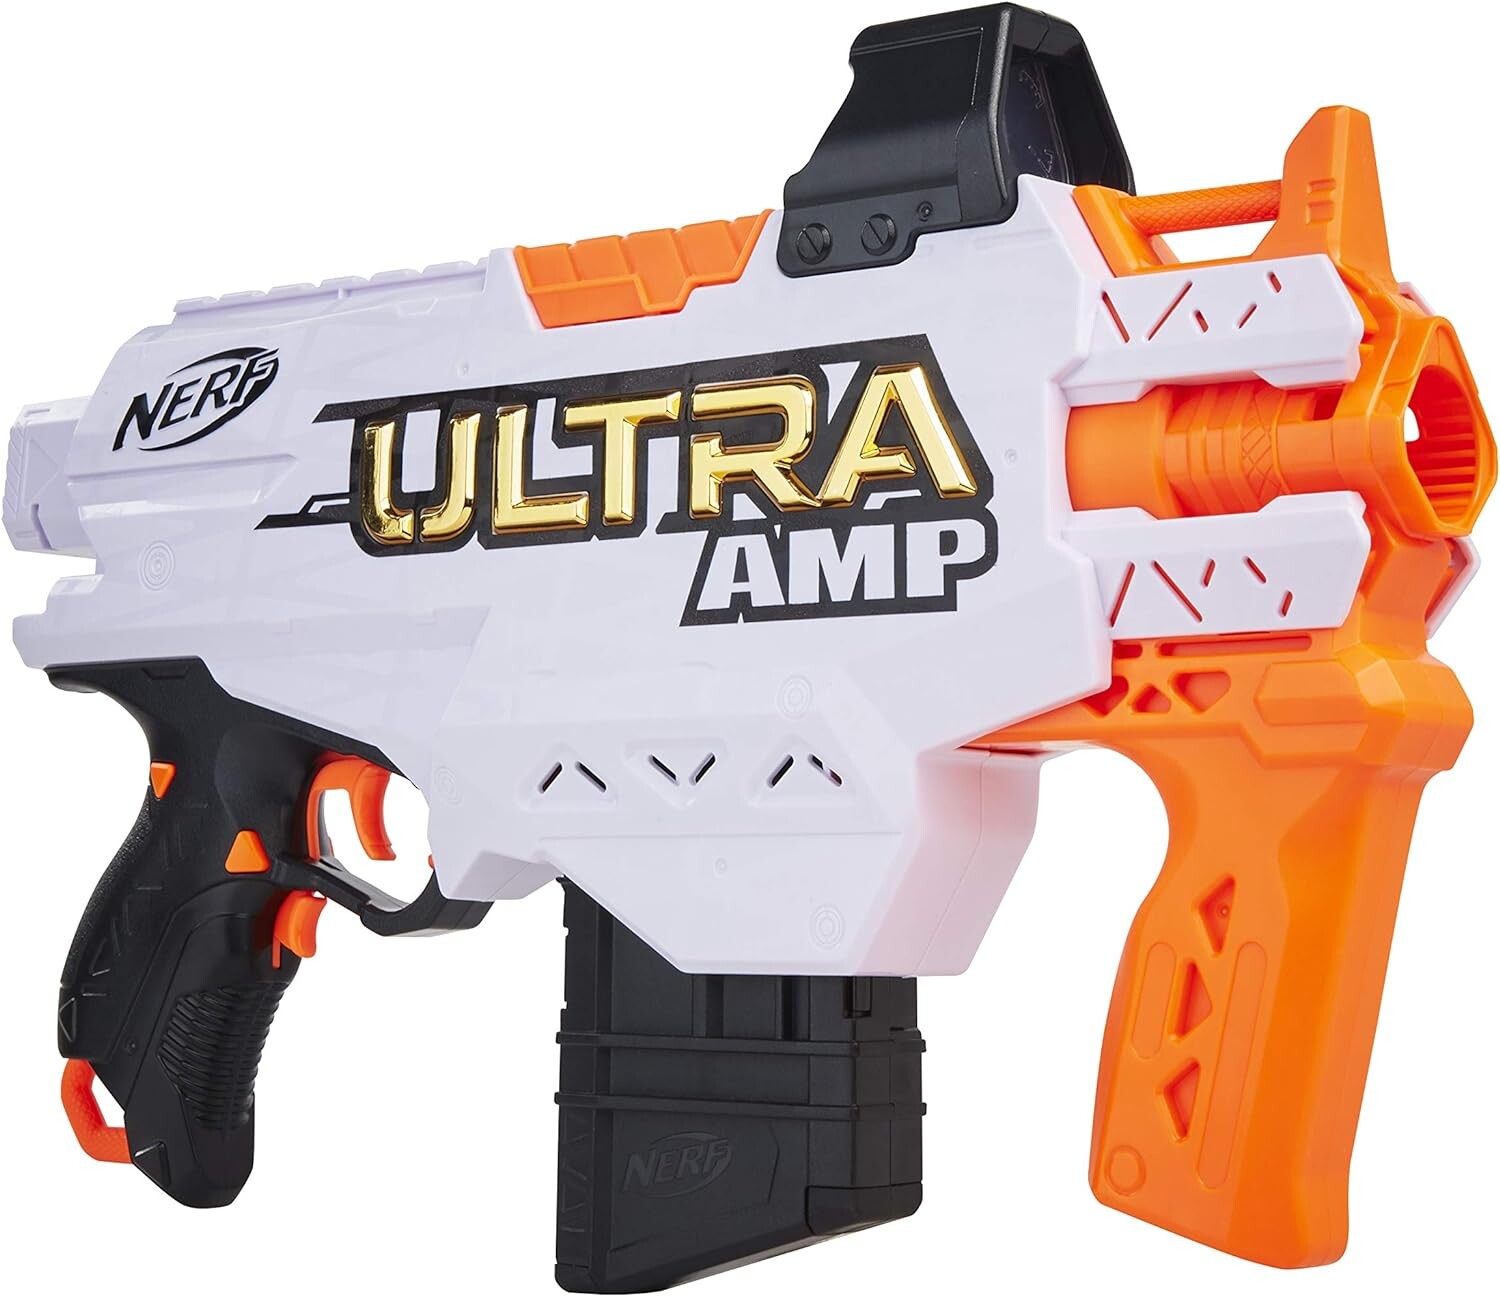 Pisolet Nerf Ultra Amp motorisé, Nerf et jeux de tir